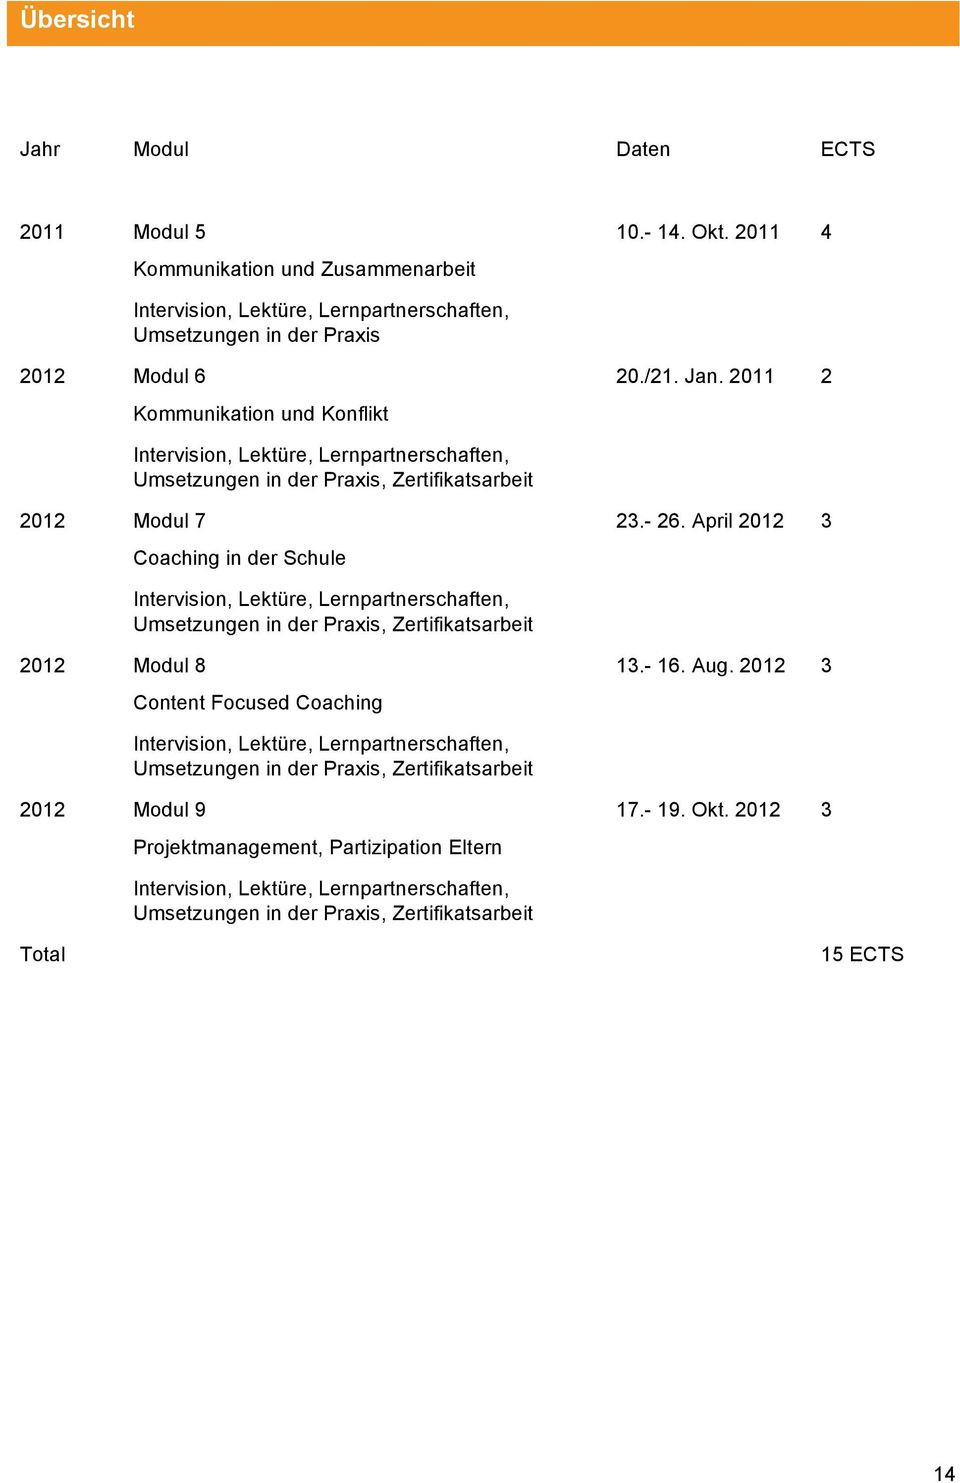 2011 2 Intervision, Lektüre, Lernpartnerschaften, Umsetzungen in der Praxis, Zertifikatsarbeit 2012 Modul 7 Coaching in der Schule 23.- 26.